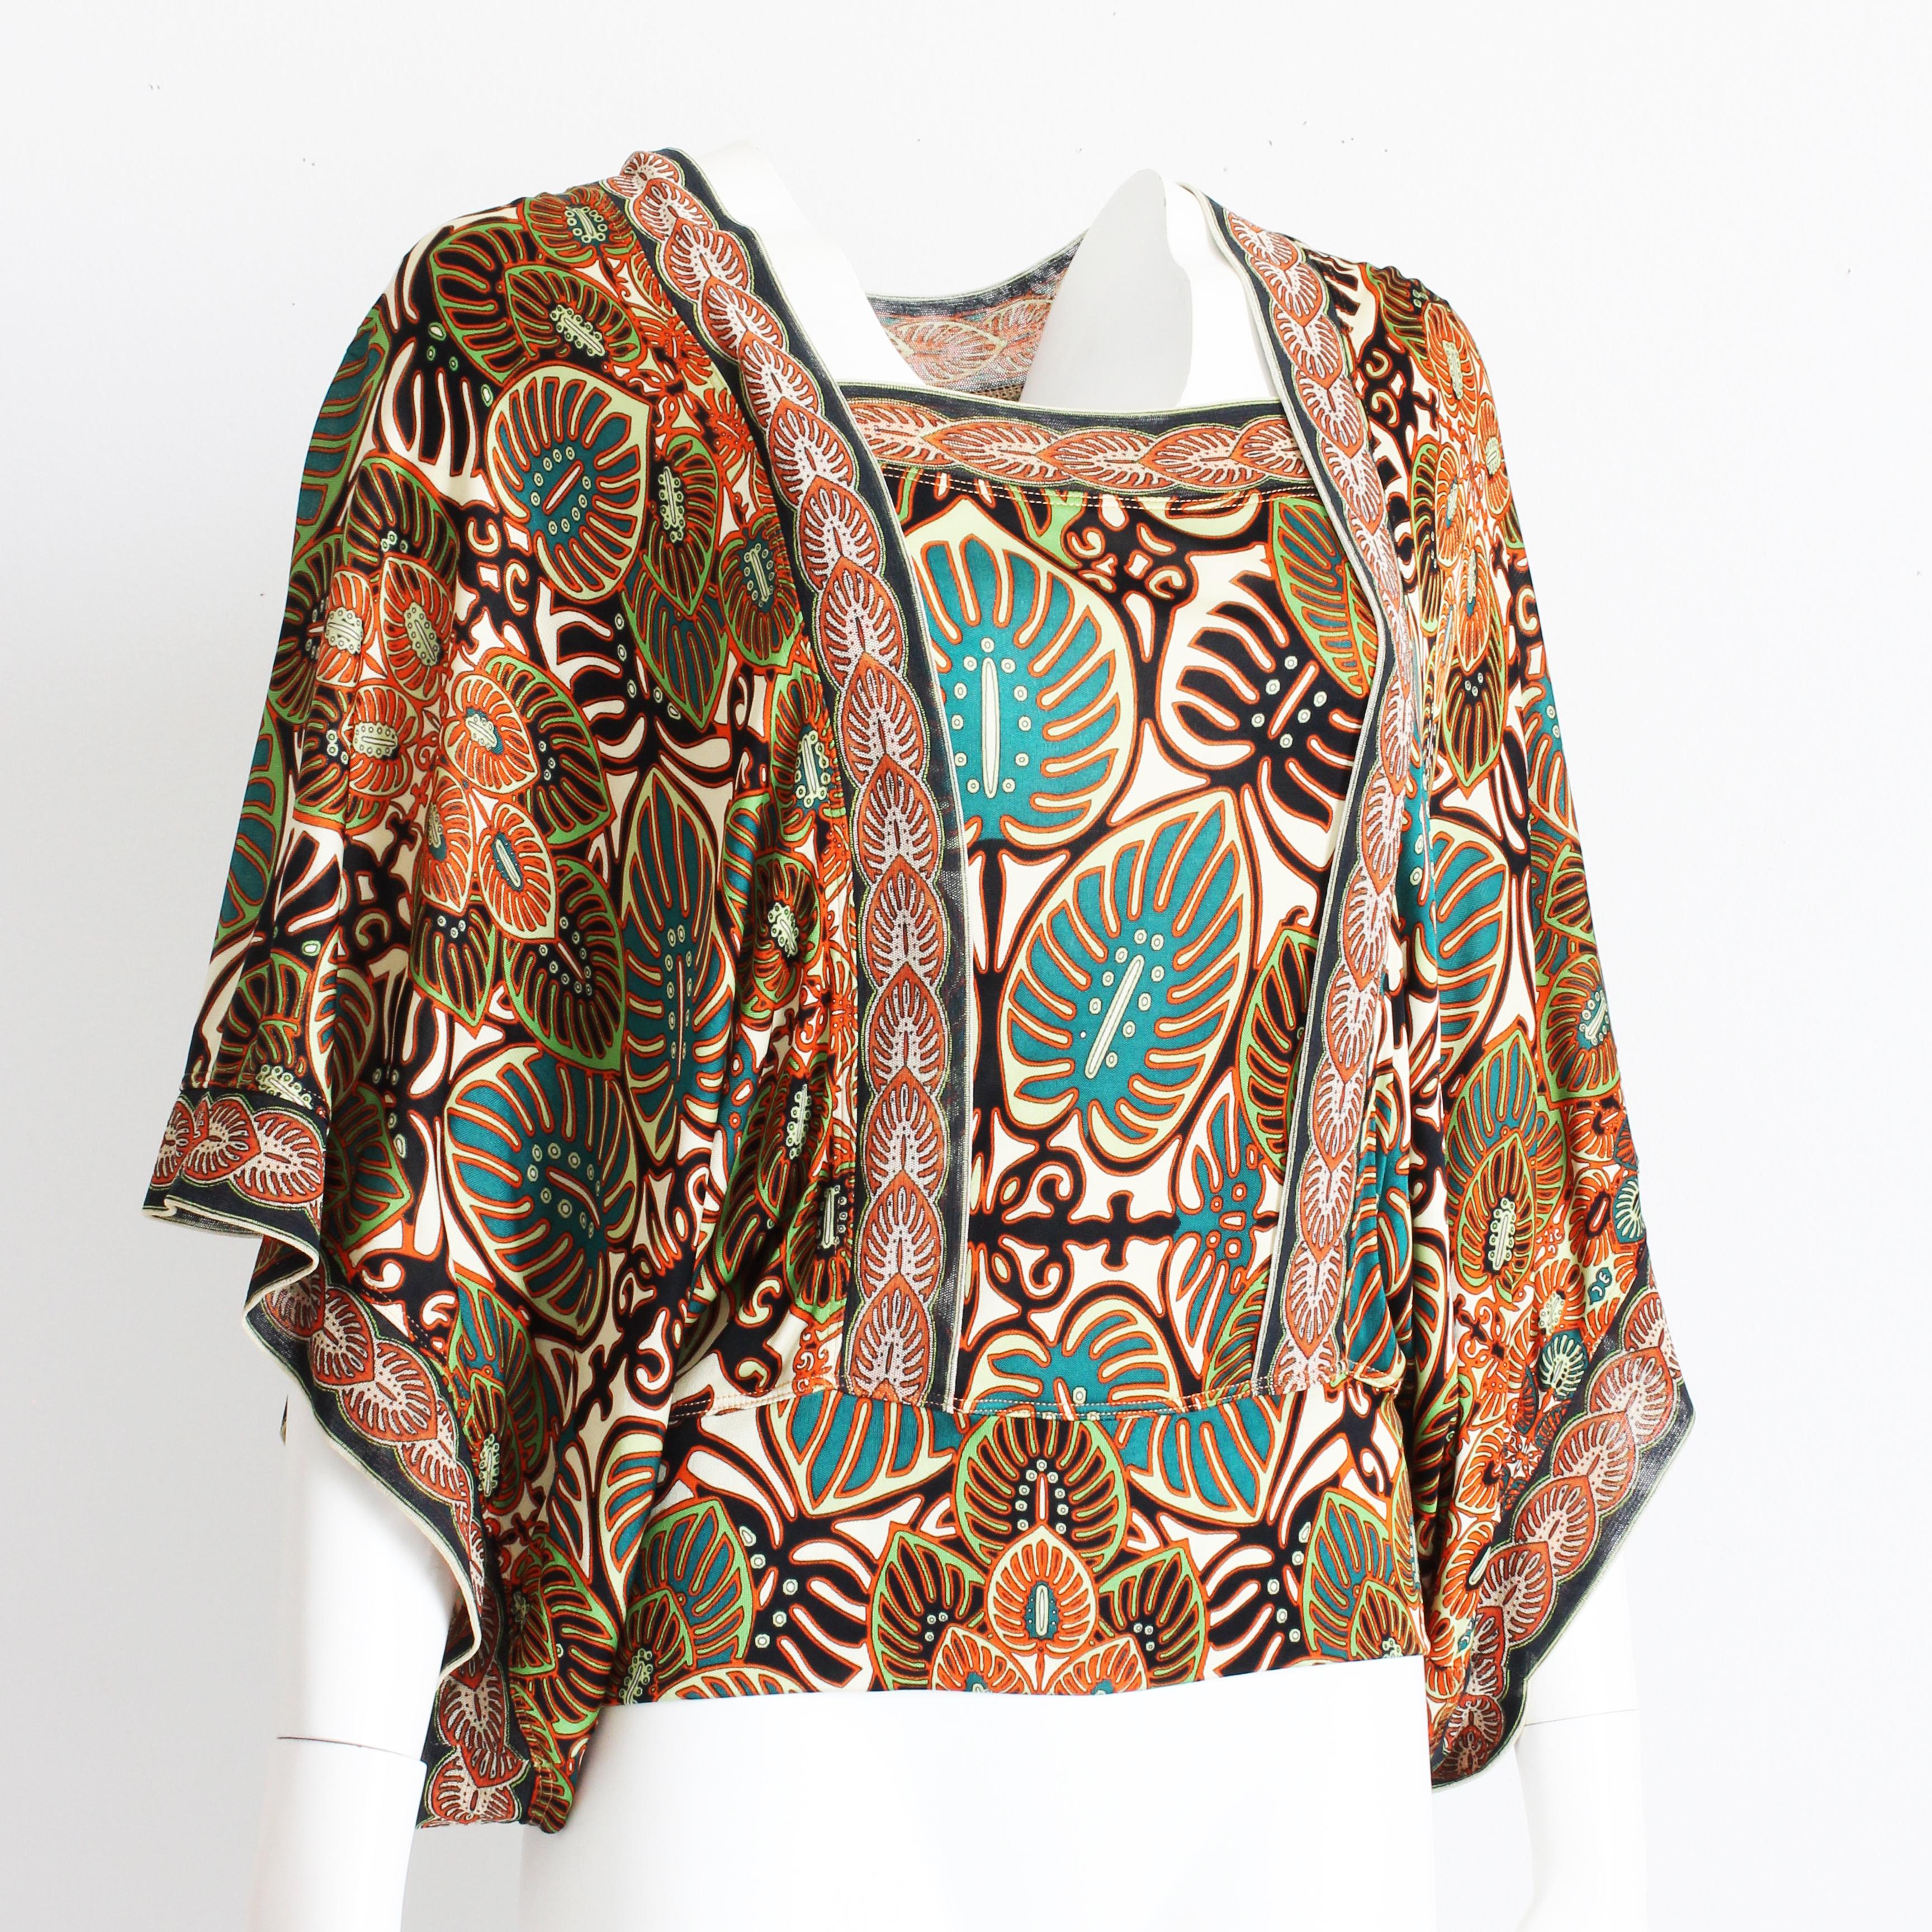 Authentique blouse à manches d'ange vintage Jean Paul Gaultier, d'occasion, probablement réalisée dans les années 90. Confectionnée dans une maille à imprimé abstrait fabuleusement vibrant dans des tons de rouge, d'orange, de sarcelle et de noir,